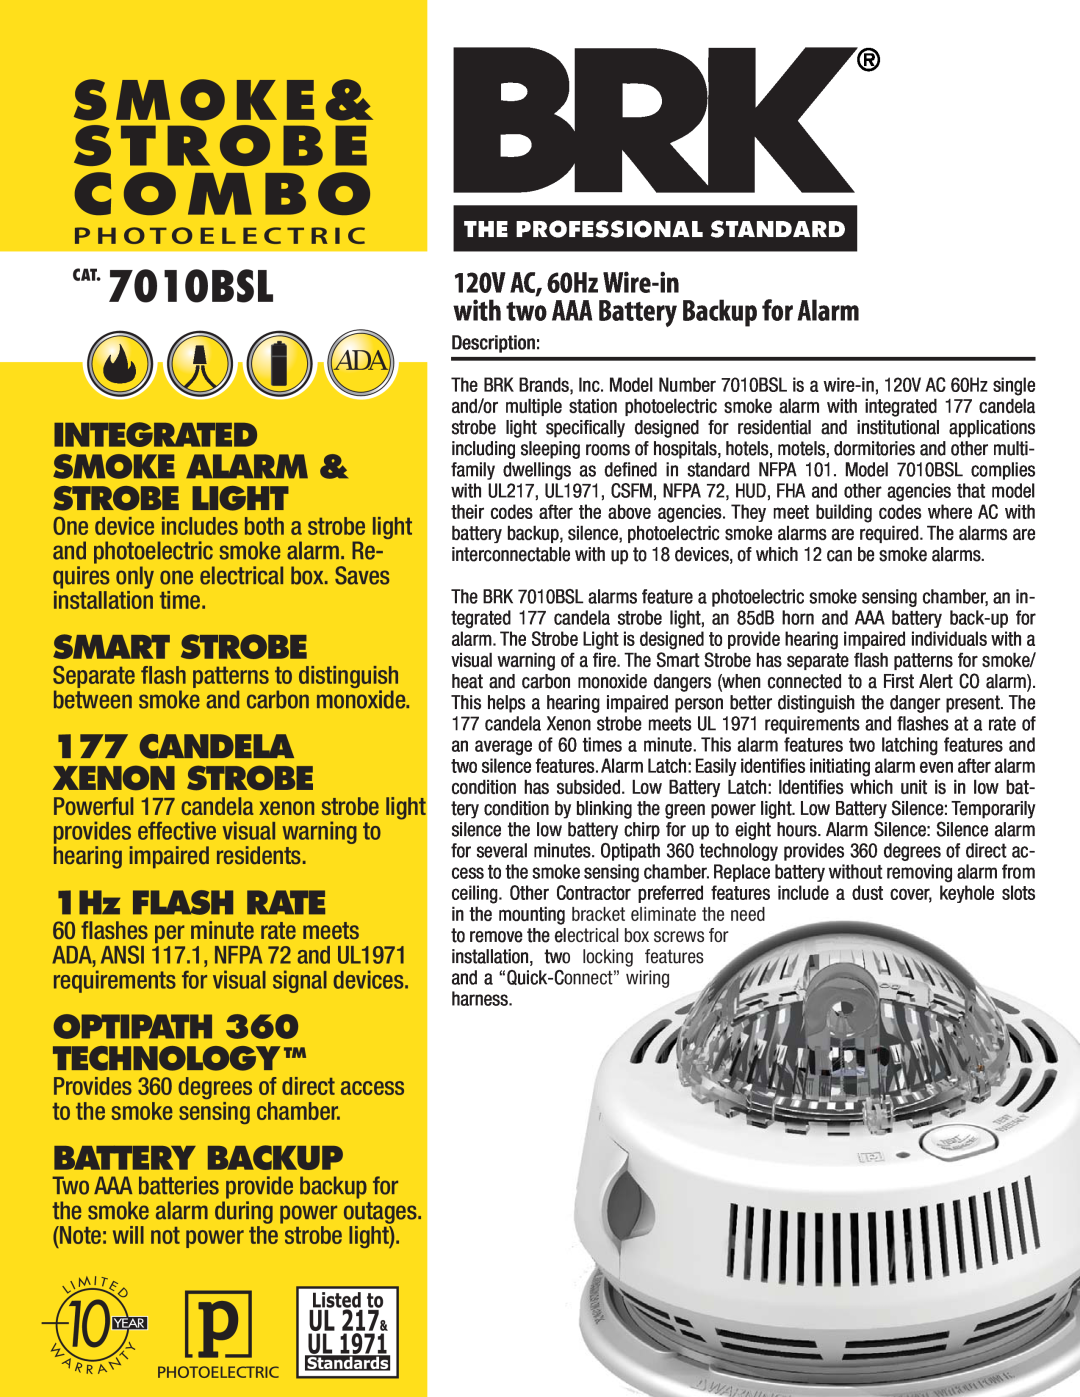 BRK electronic manual CAT. 7010BSL, C O M B O, S M O K E & S T R O B E, Integrated Smoke Alarm & Strobe Light 